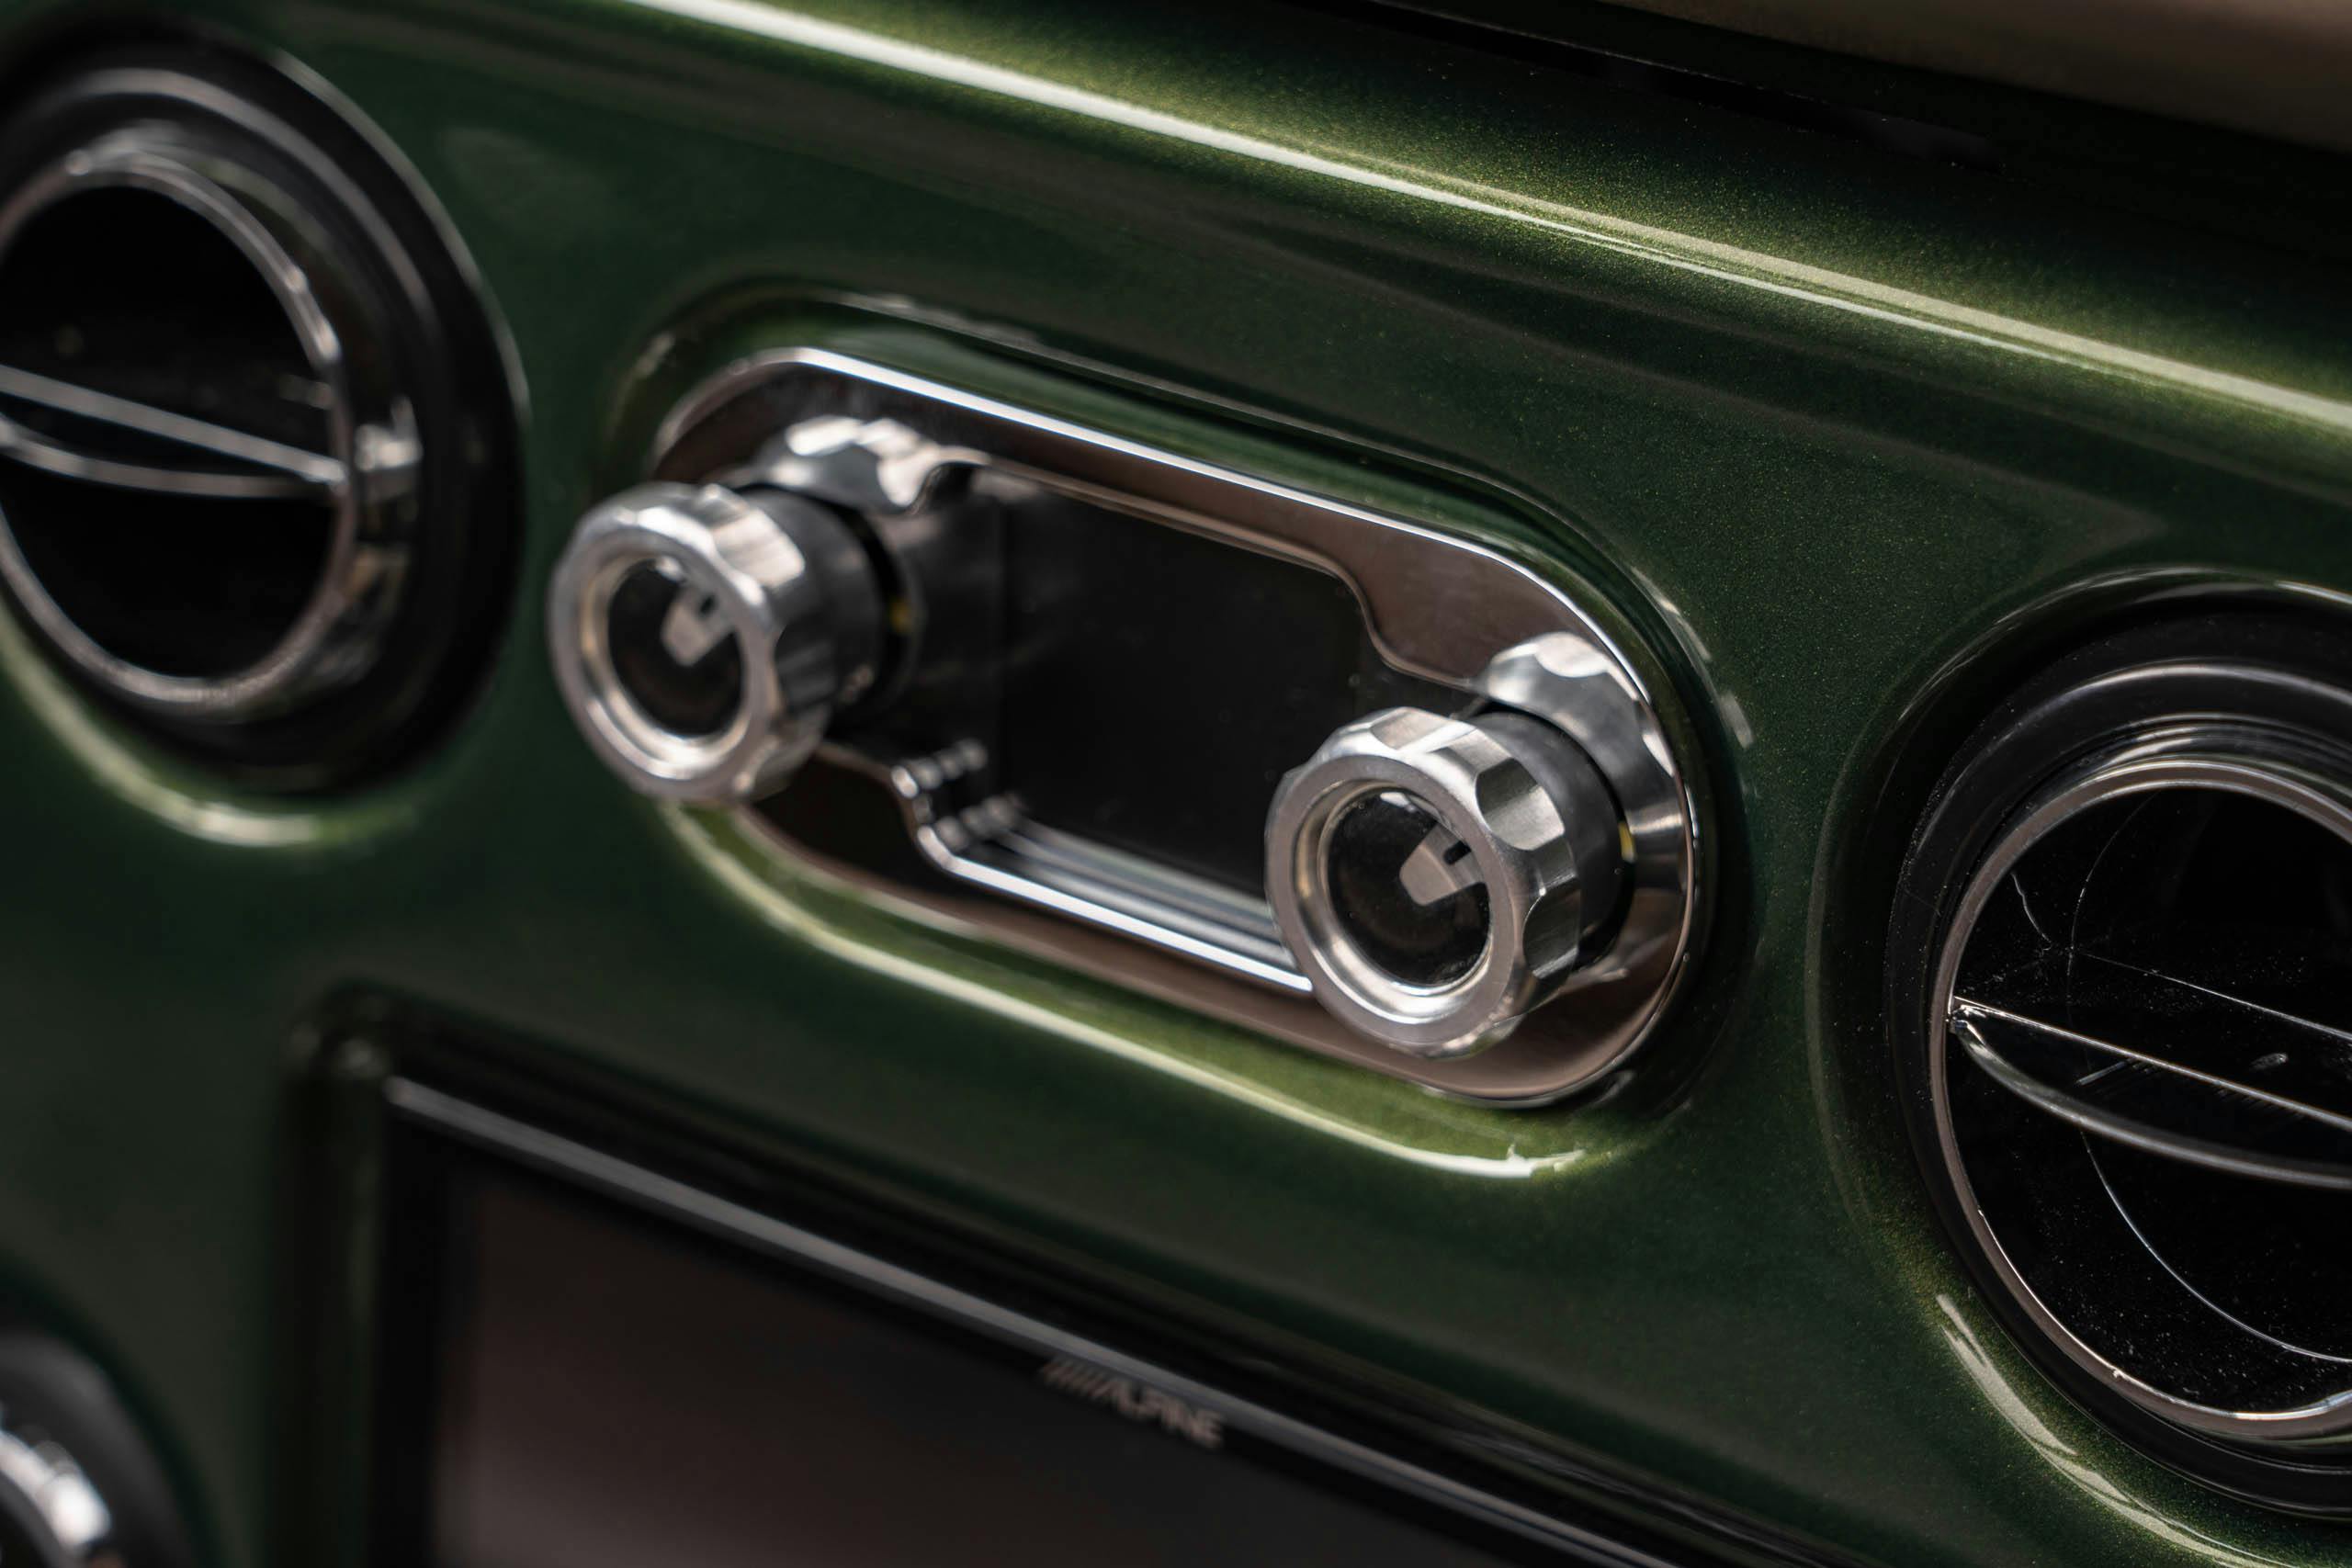 Velocity Modern Classics K5 Chevy Blazer restomod interior radio detail